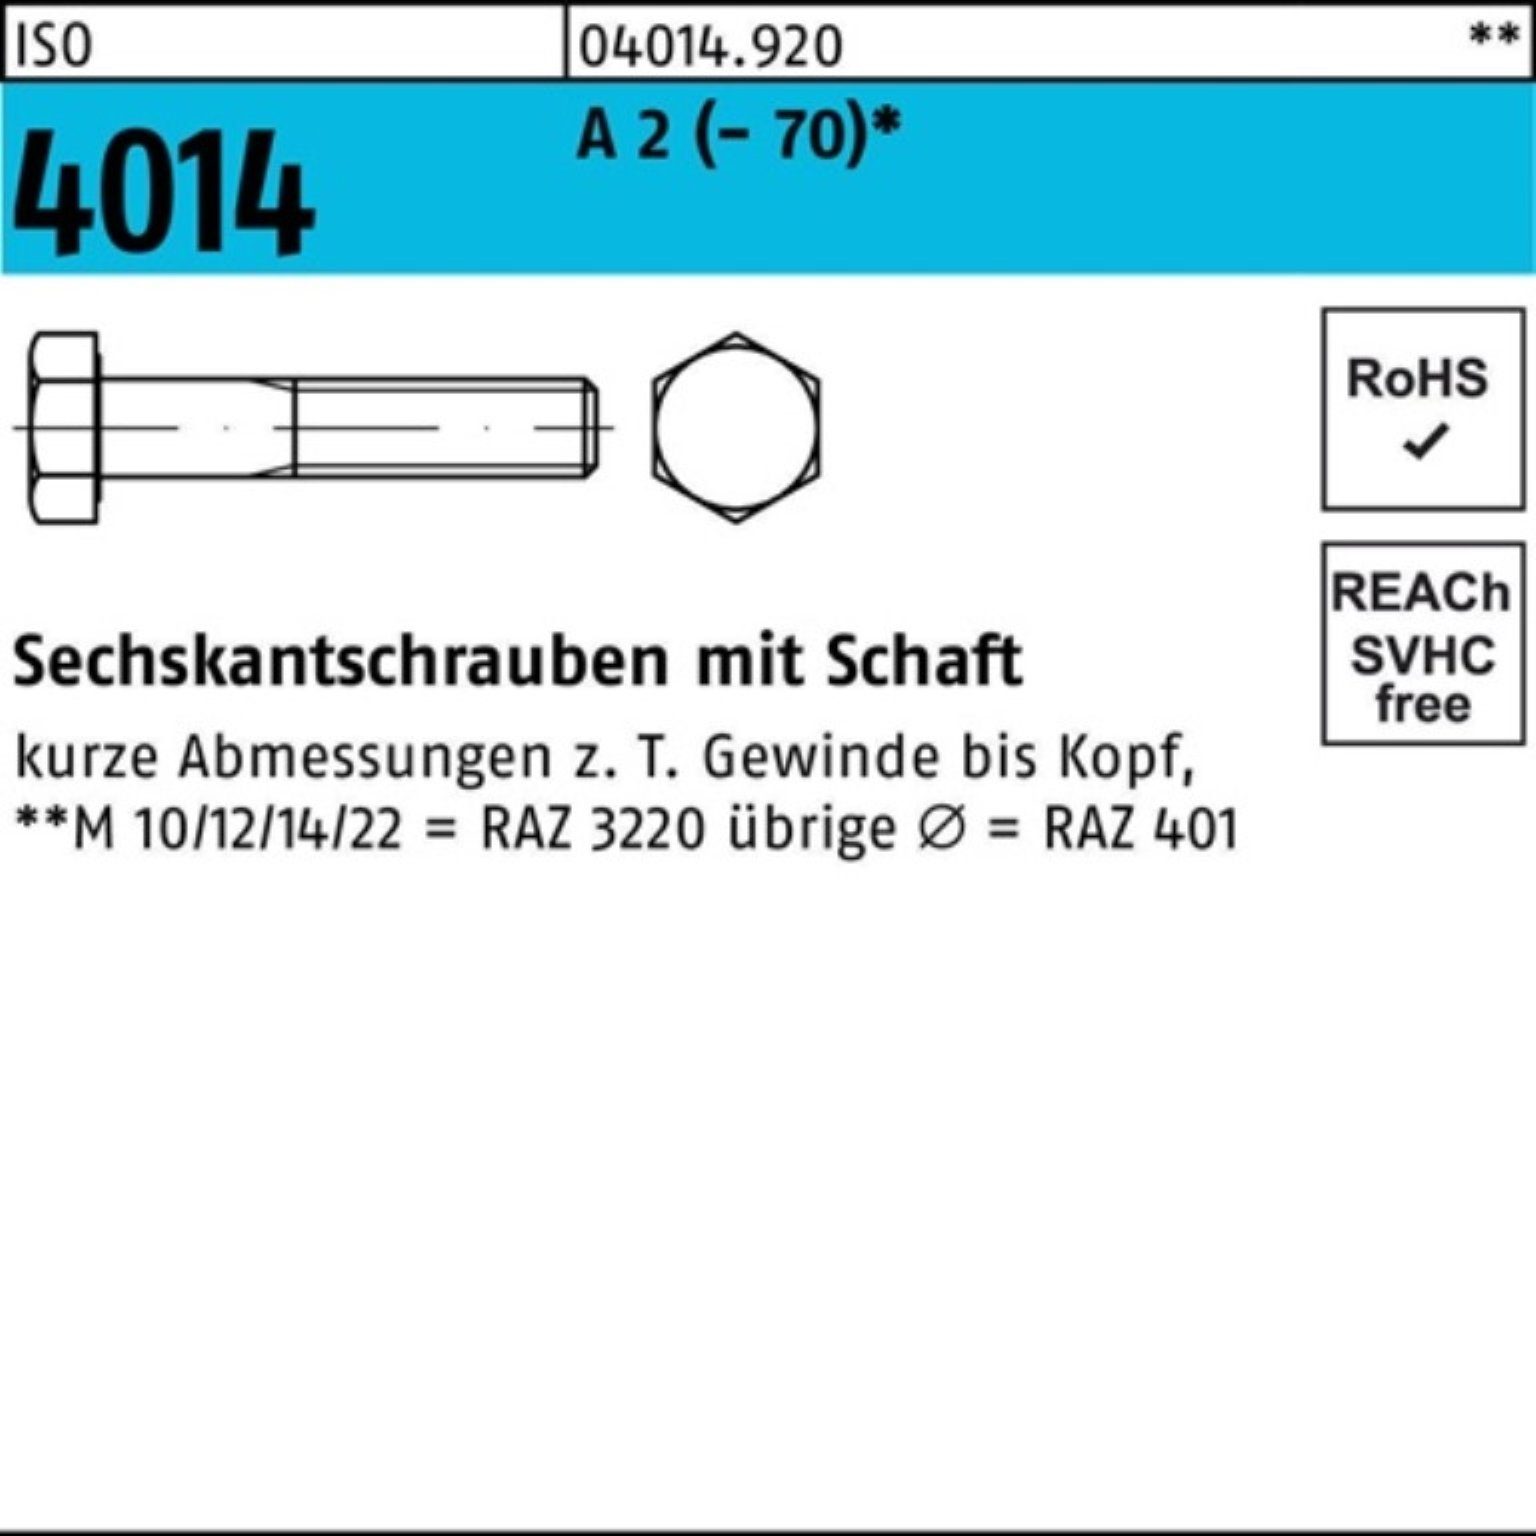 Bufab Sechskantschraube 100er Pack Sechskantschraube ISO 4014 Schaft M10x 110 A 2 (70) 100 S